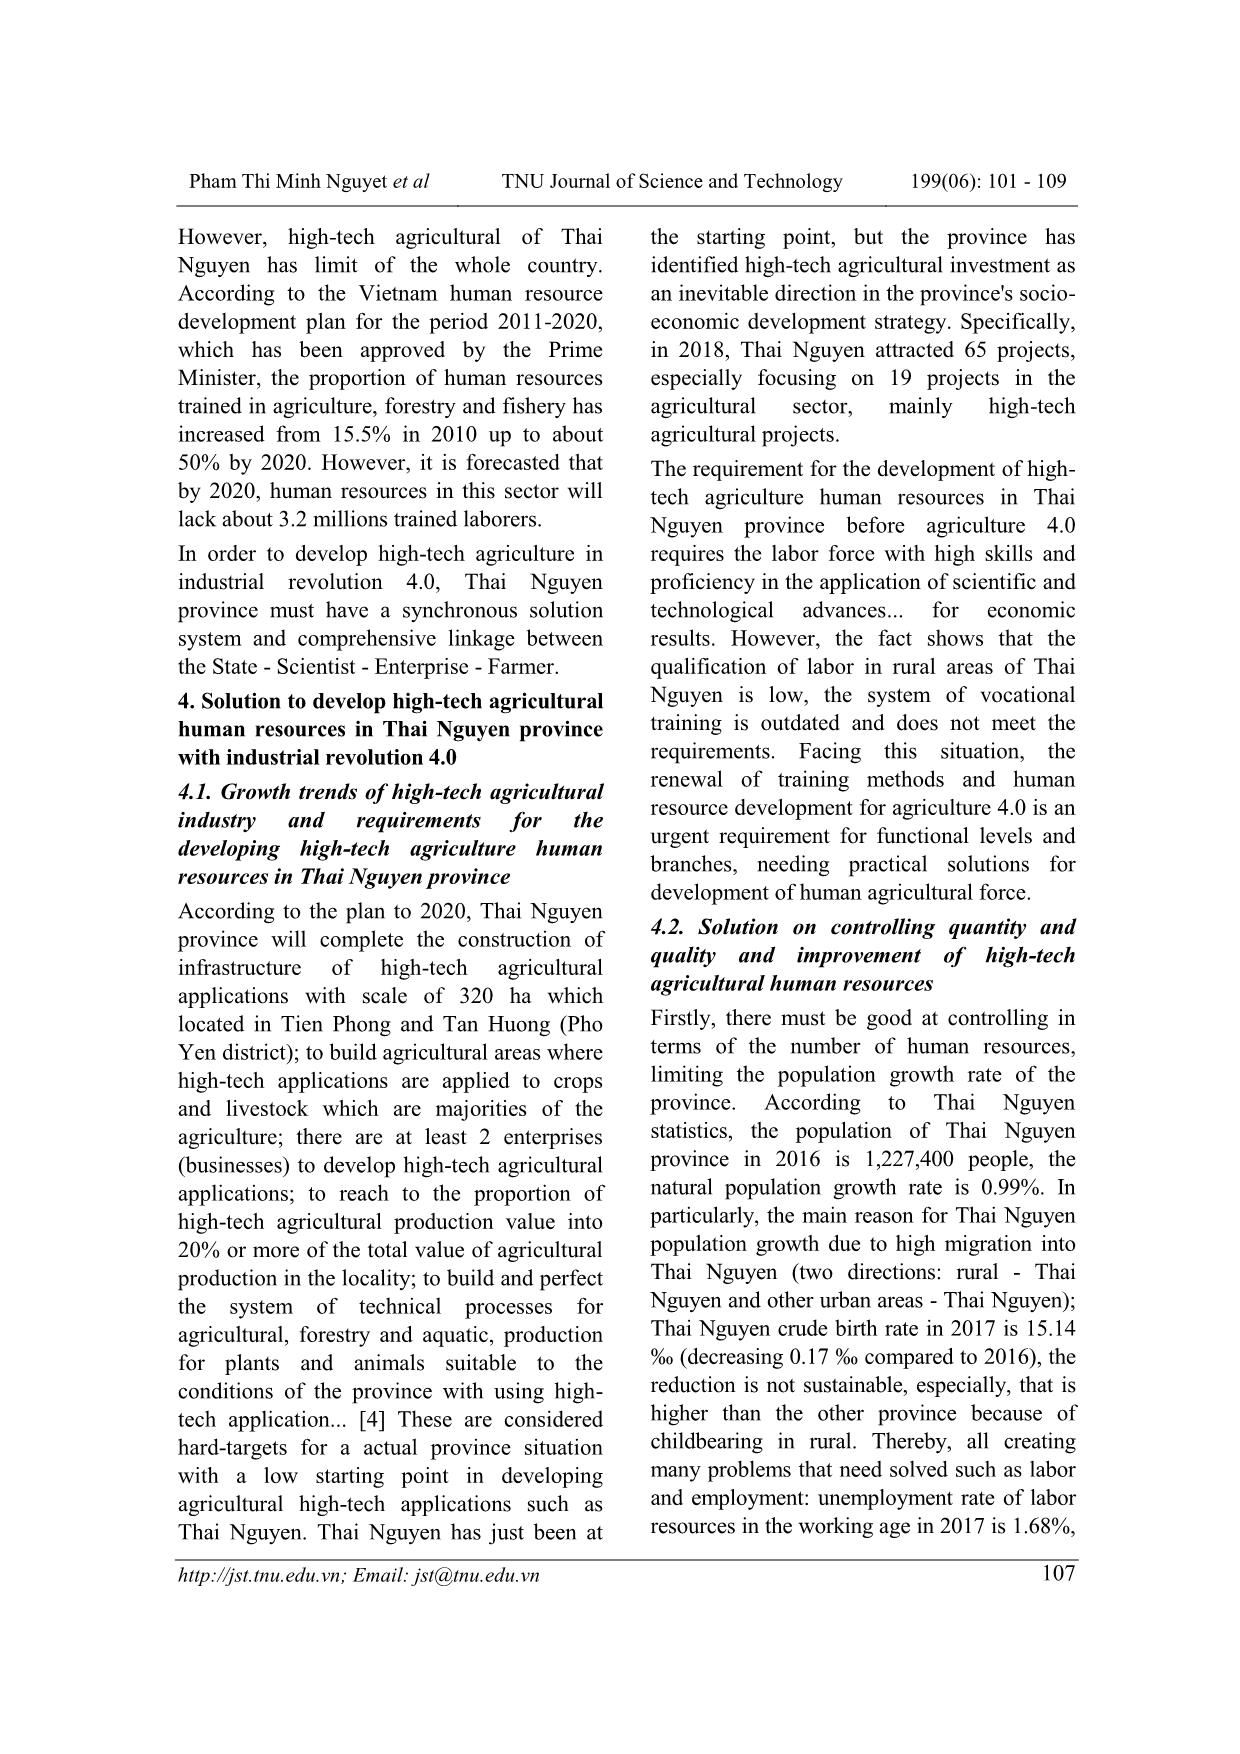 Cuộc cách mạng công nghiệp 4.0 với phát triển nhân lực nông nghiệp công nghệ cao tỉnh Thái Nguyên trang 7